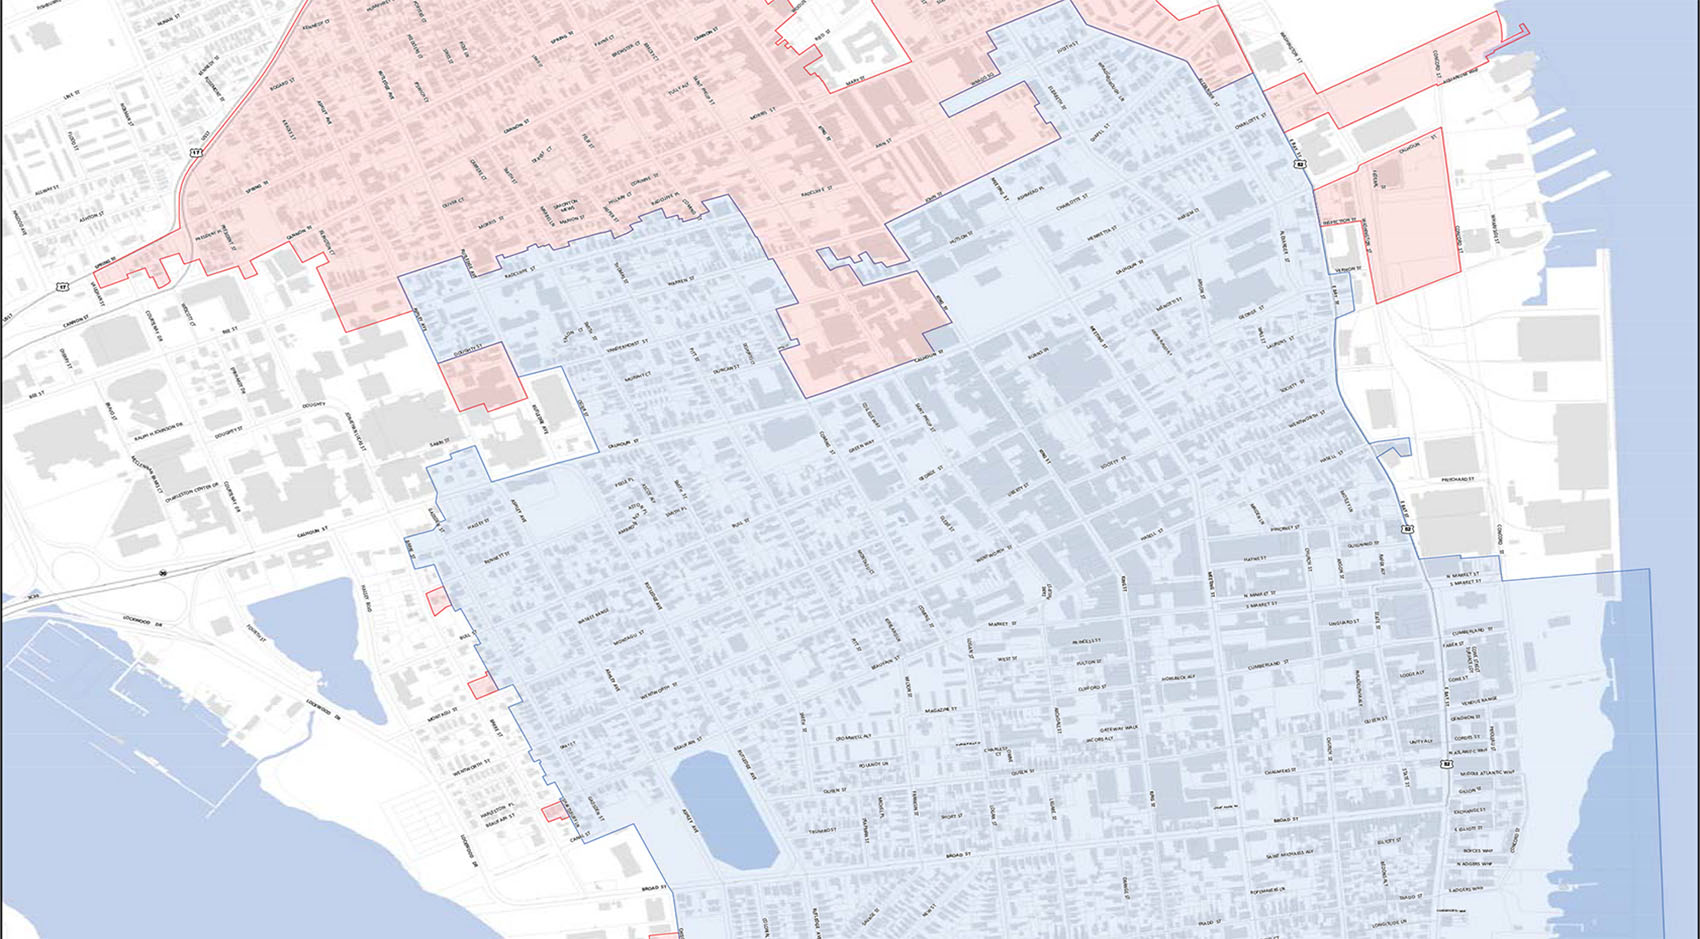 Fema flood zone map of Charleston SC 